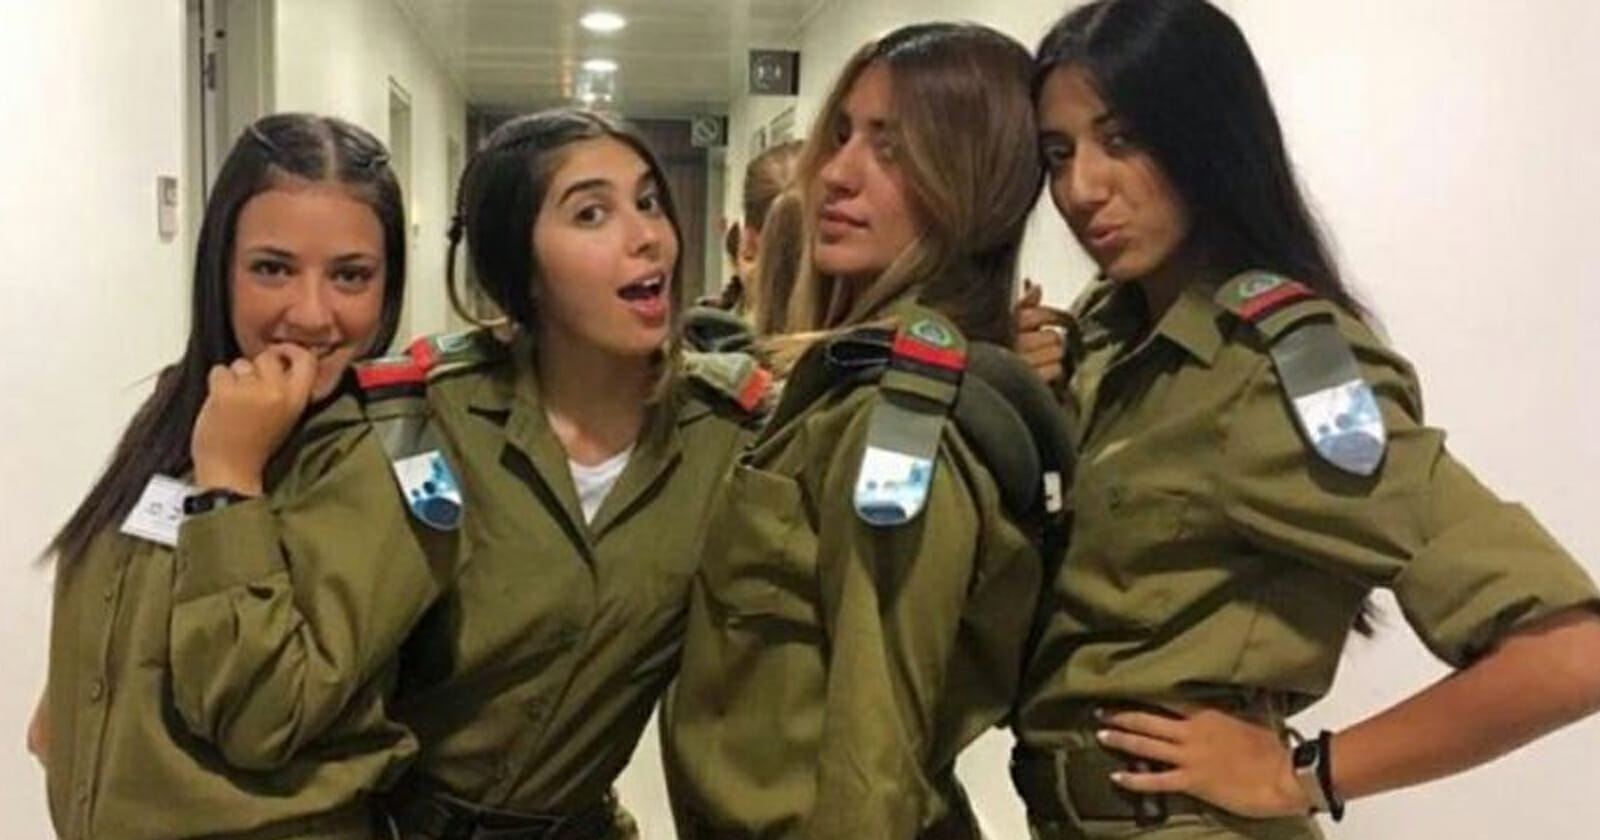 فضيحة جنسية لـ 5 مجندات إسرائيليات أقمن علاقات حميمية مع سجين فلسطيني محكوم بالمؤبد